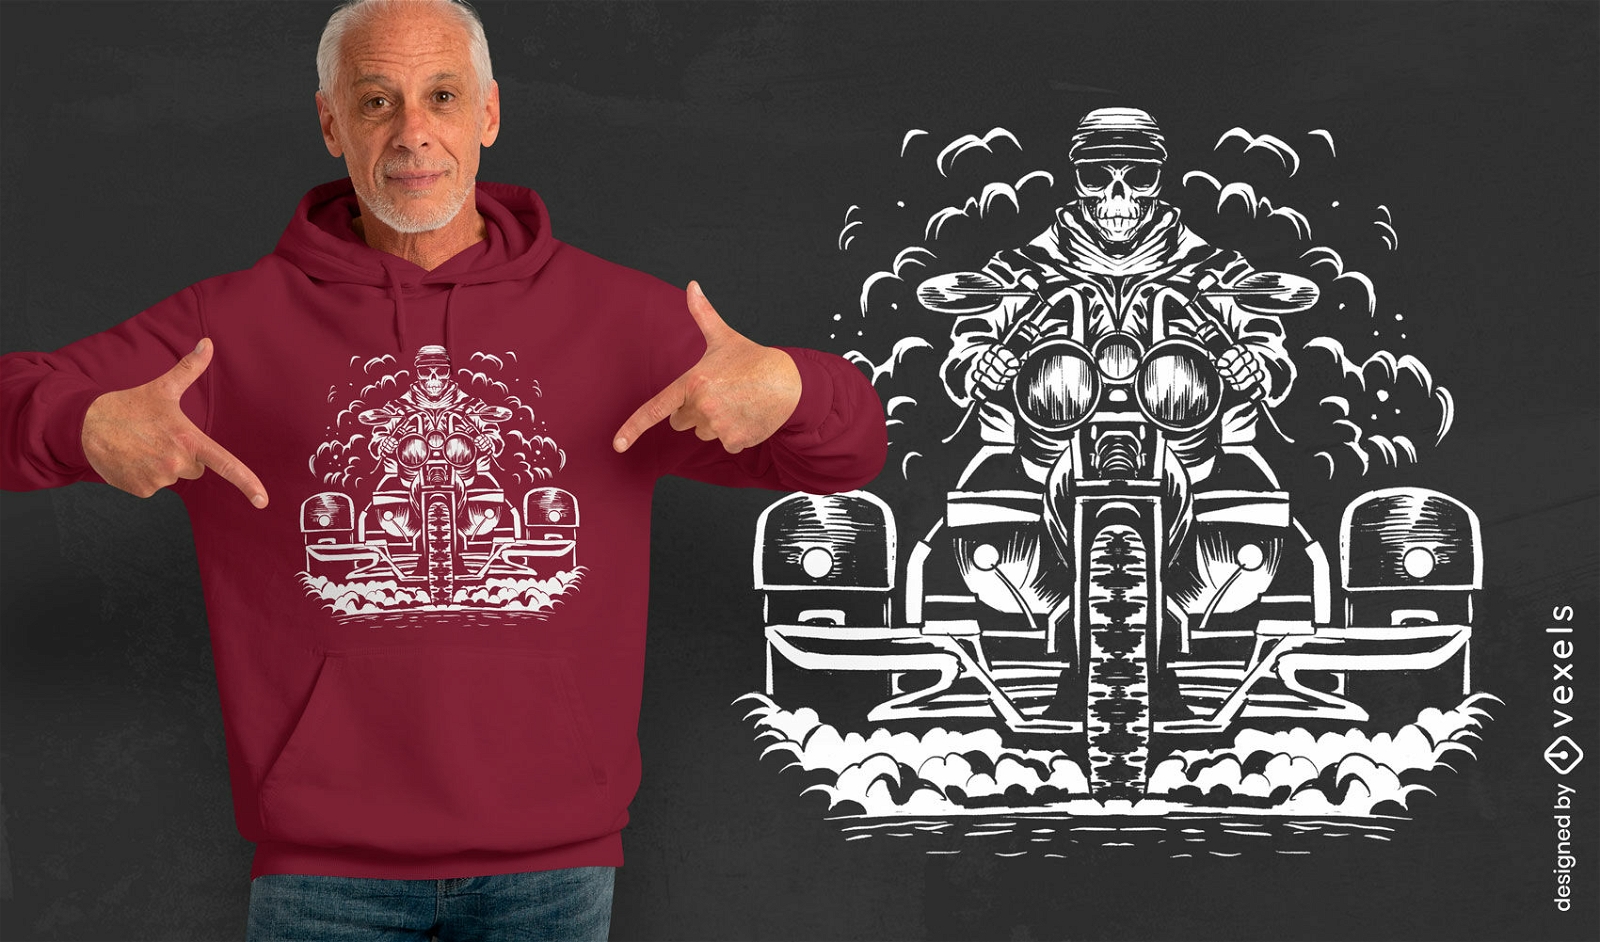 Diseño de camiseta de motociclista esqueleto grunge.